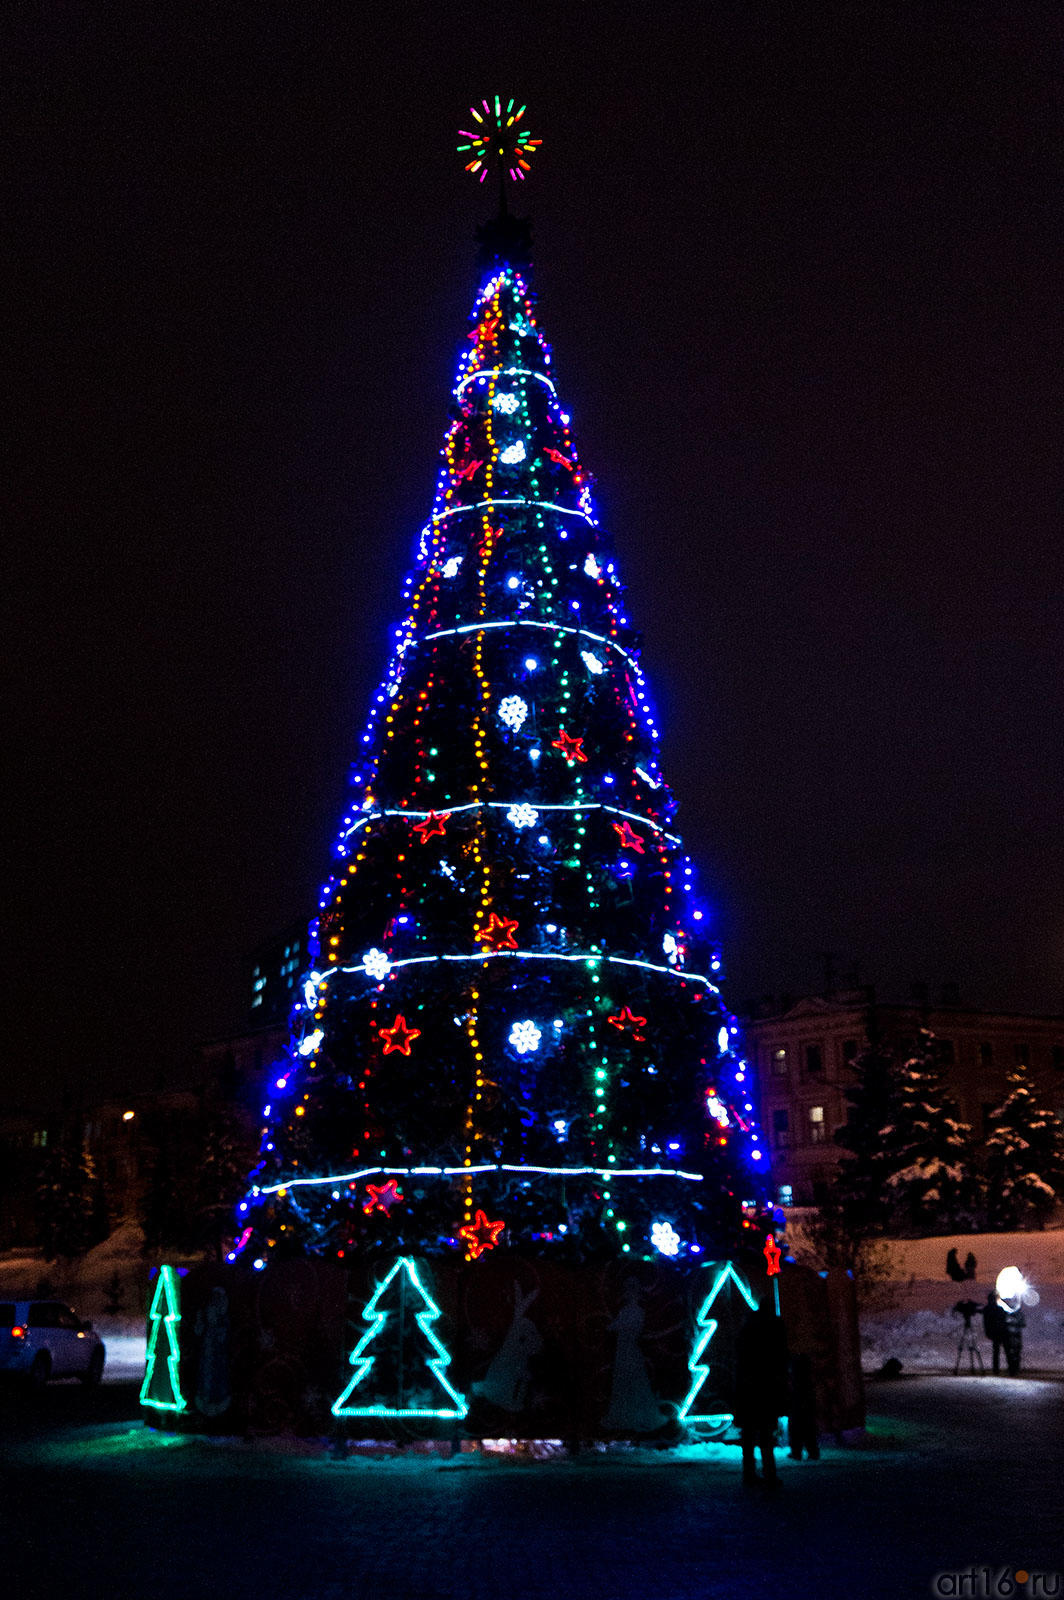 Новогодняя красавица - ёлка. Парк ʺЧерное озероʺ, 2011::Новый год в Казани, 2011/12